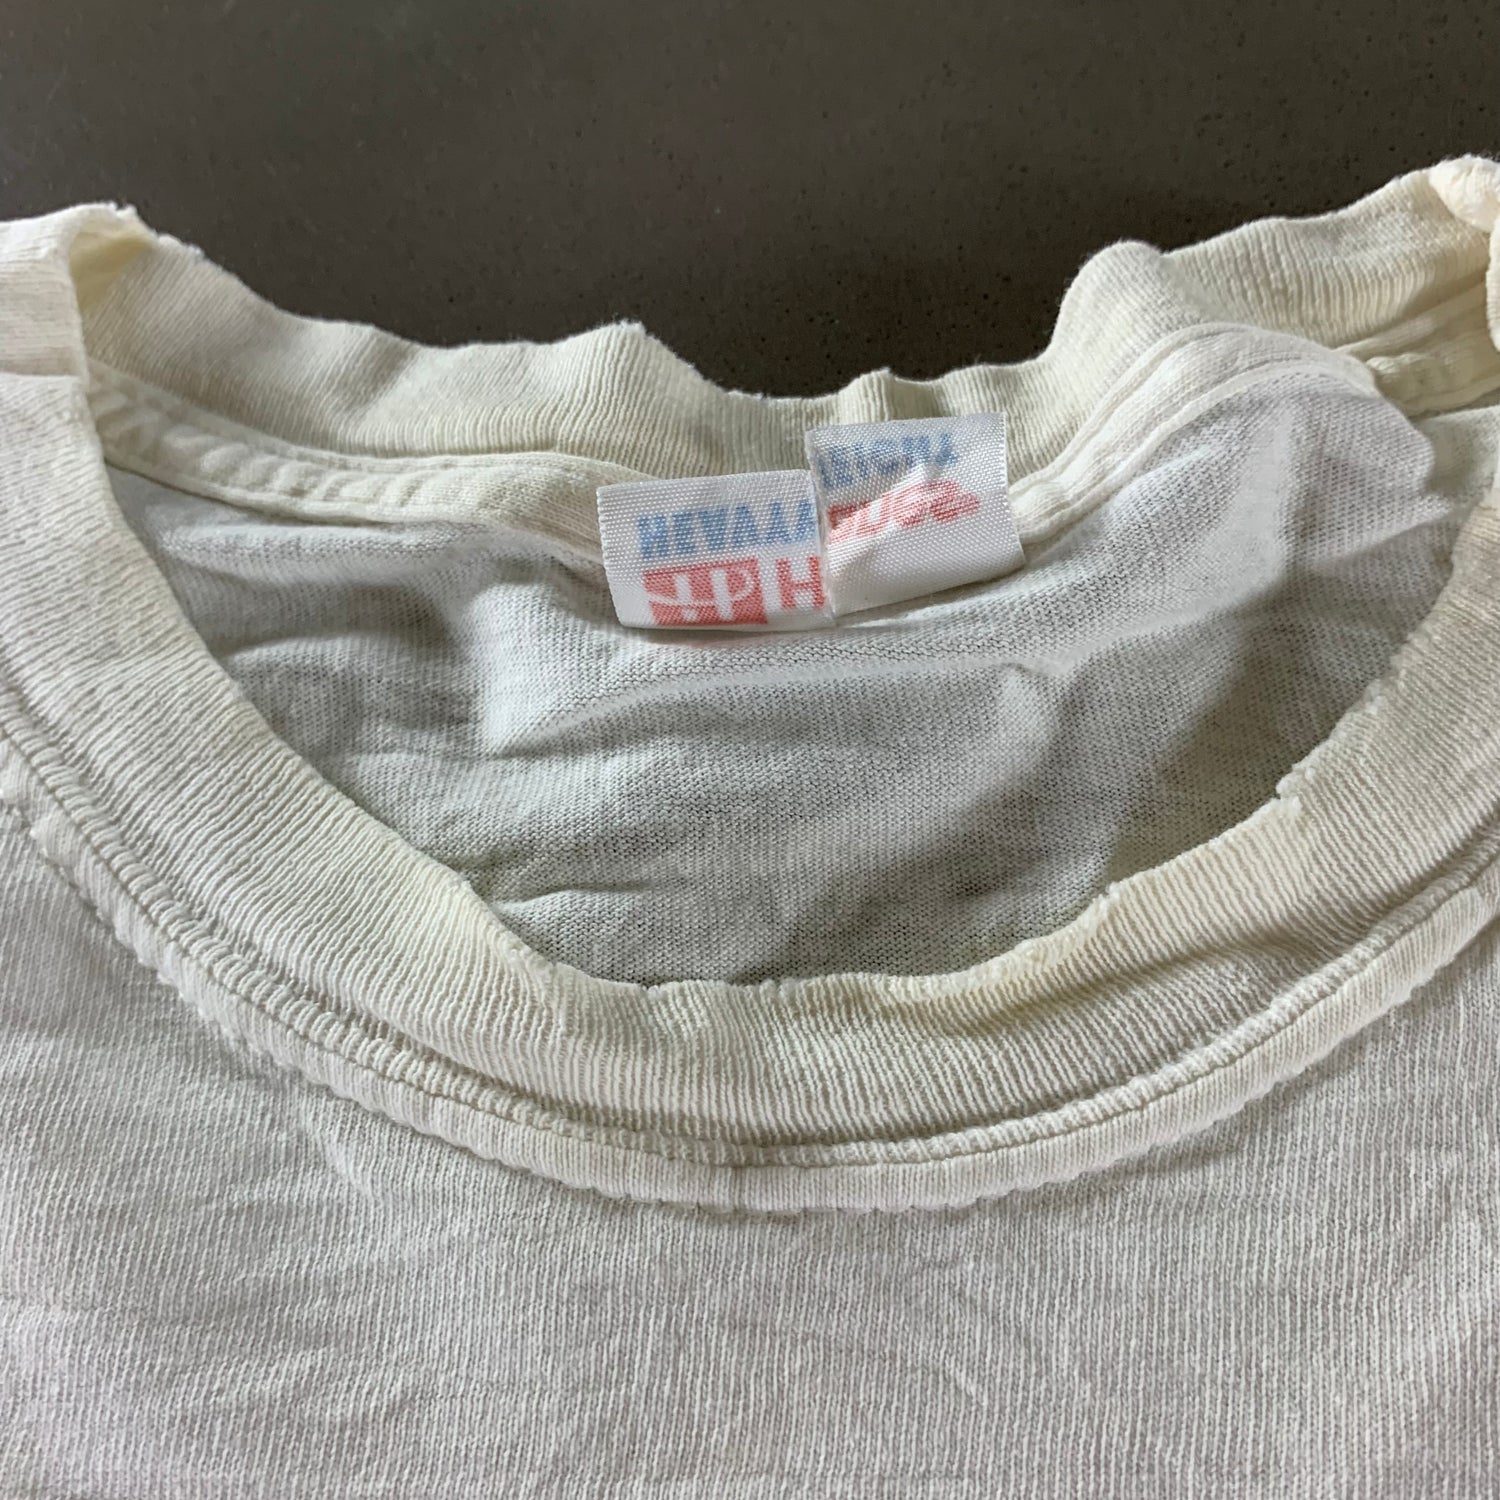 Vintage 1990s Arizona T-shirt size XL